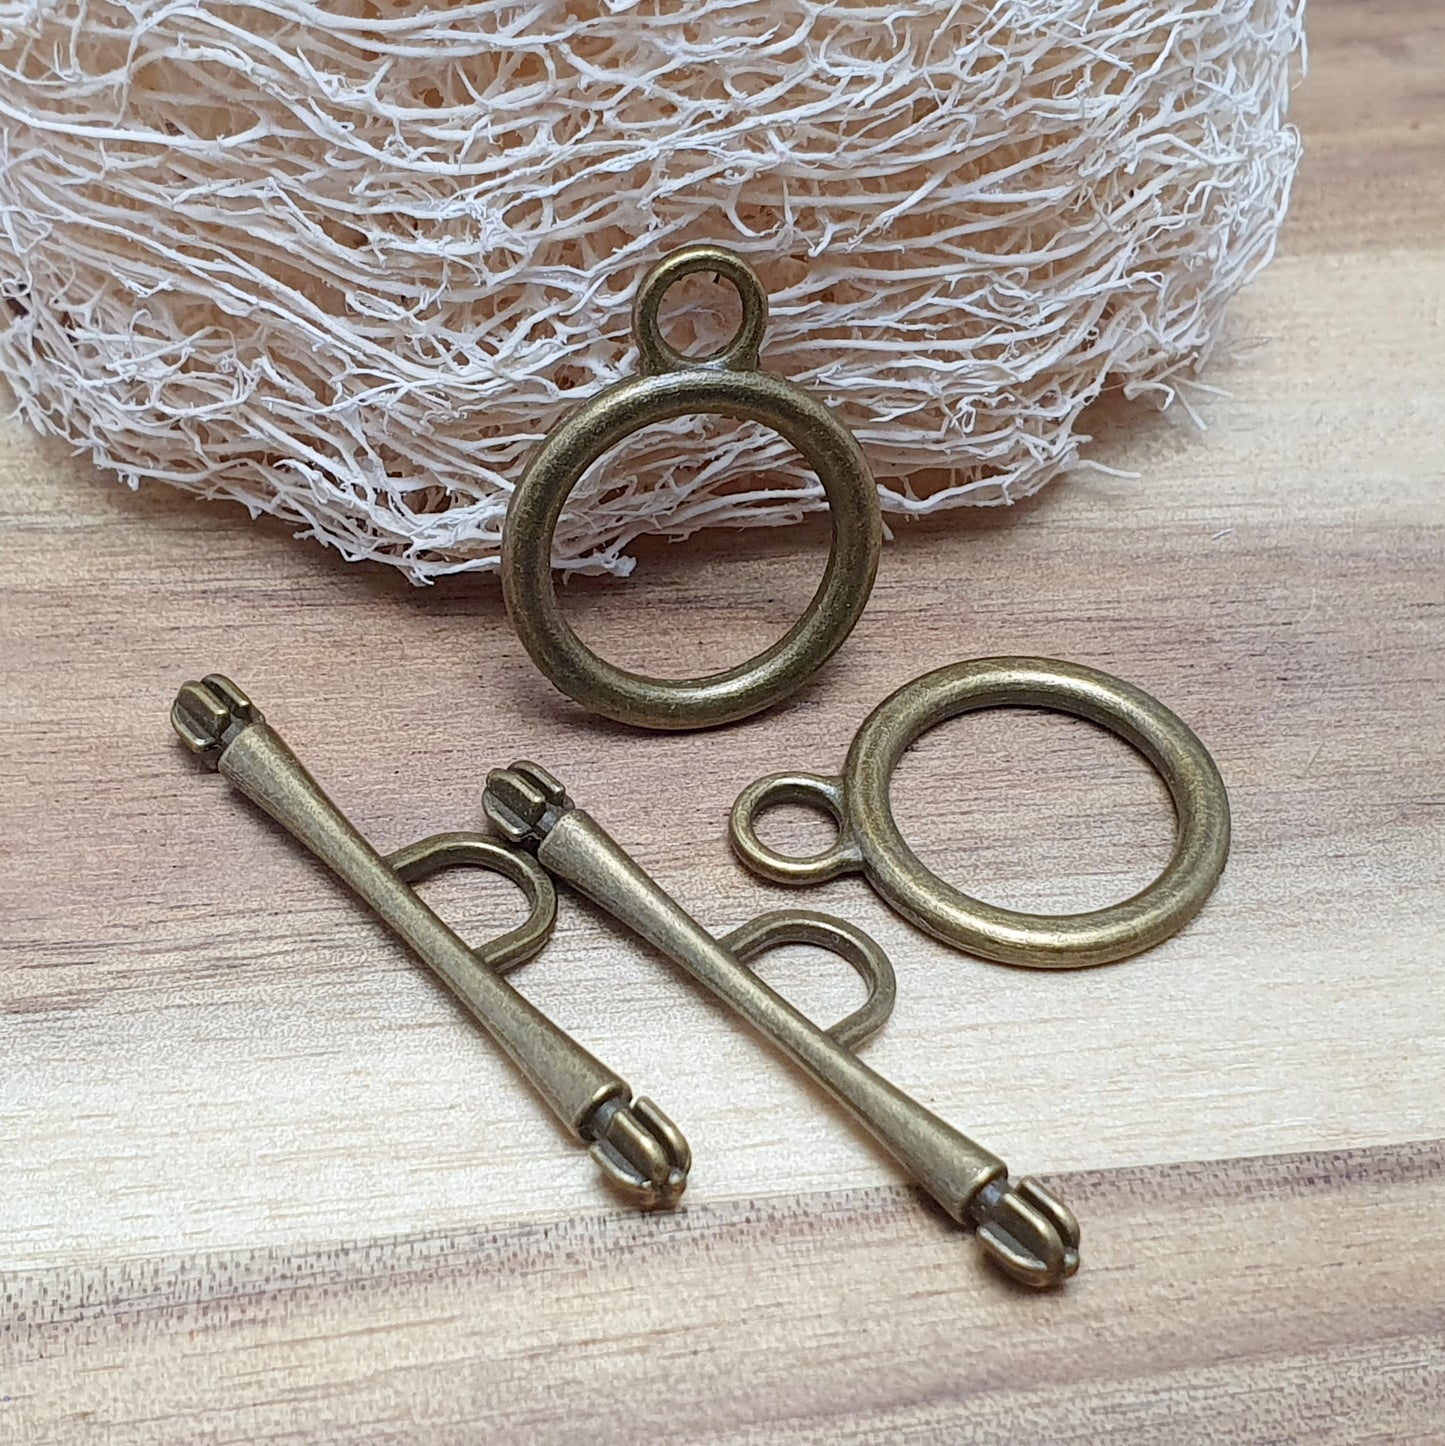 2 XL Knebelverschlüsse antik bronzefarbig, im nostalgischen Design